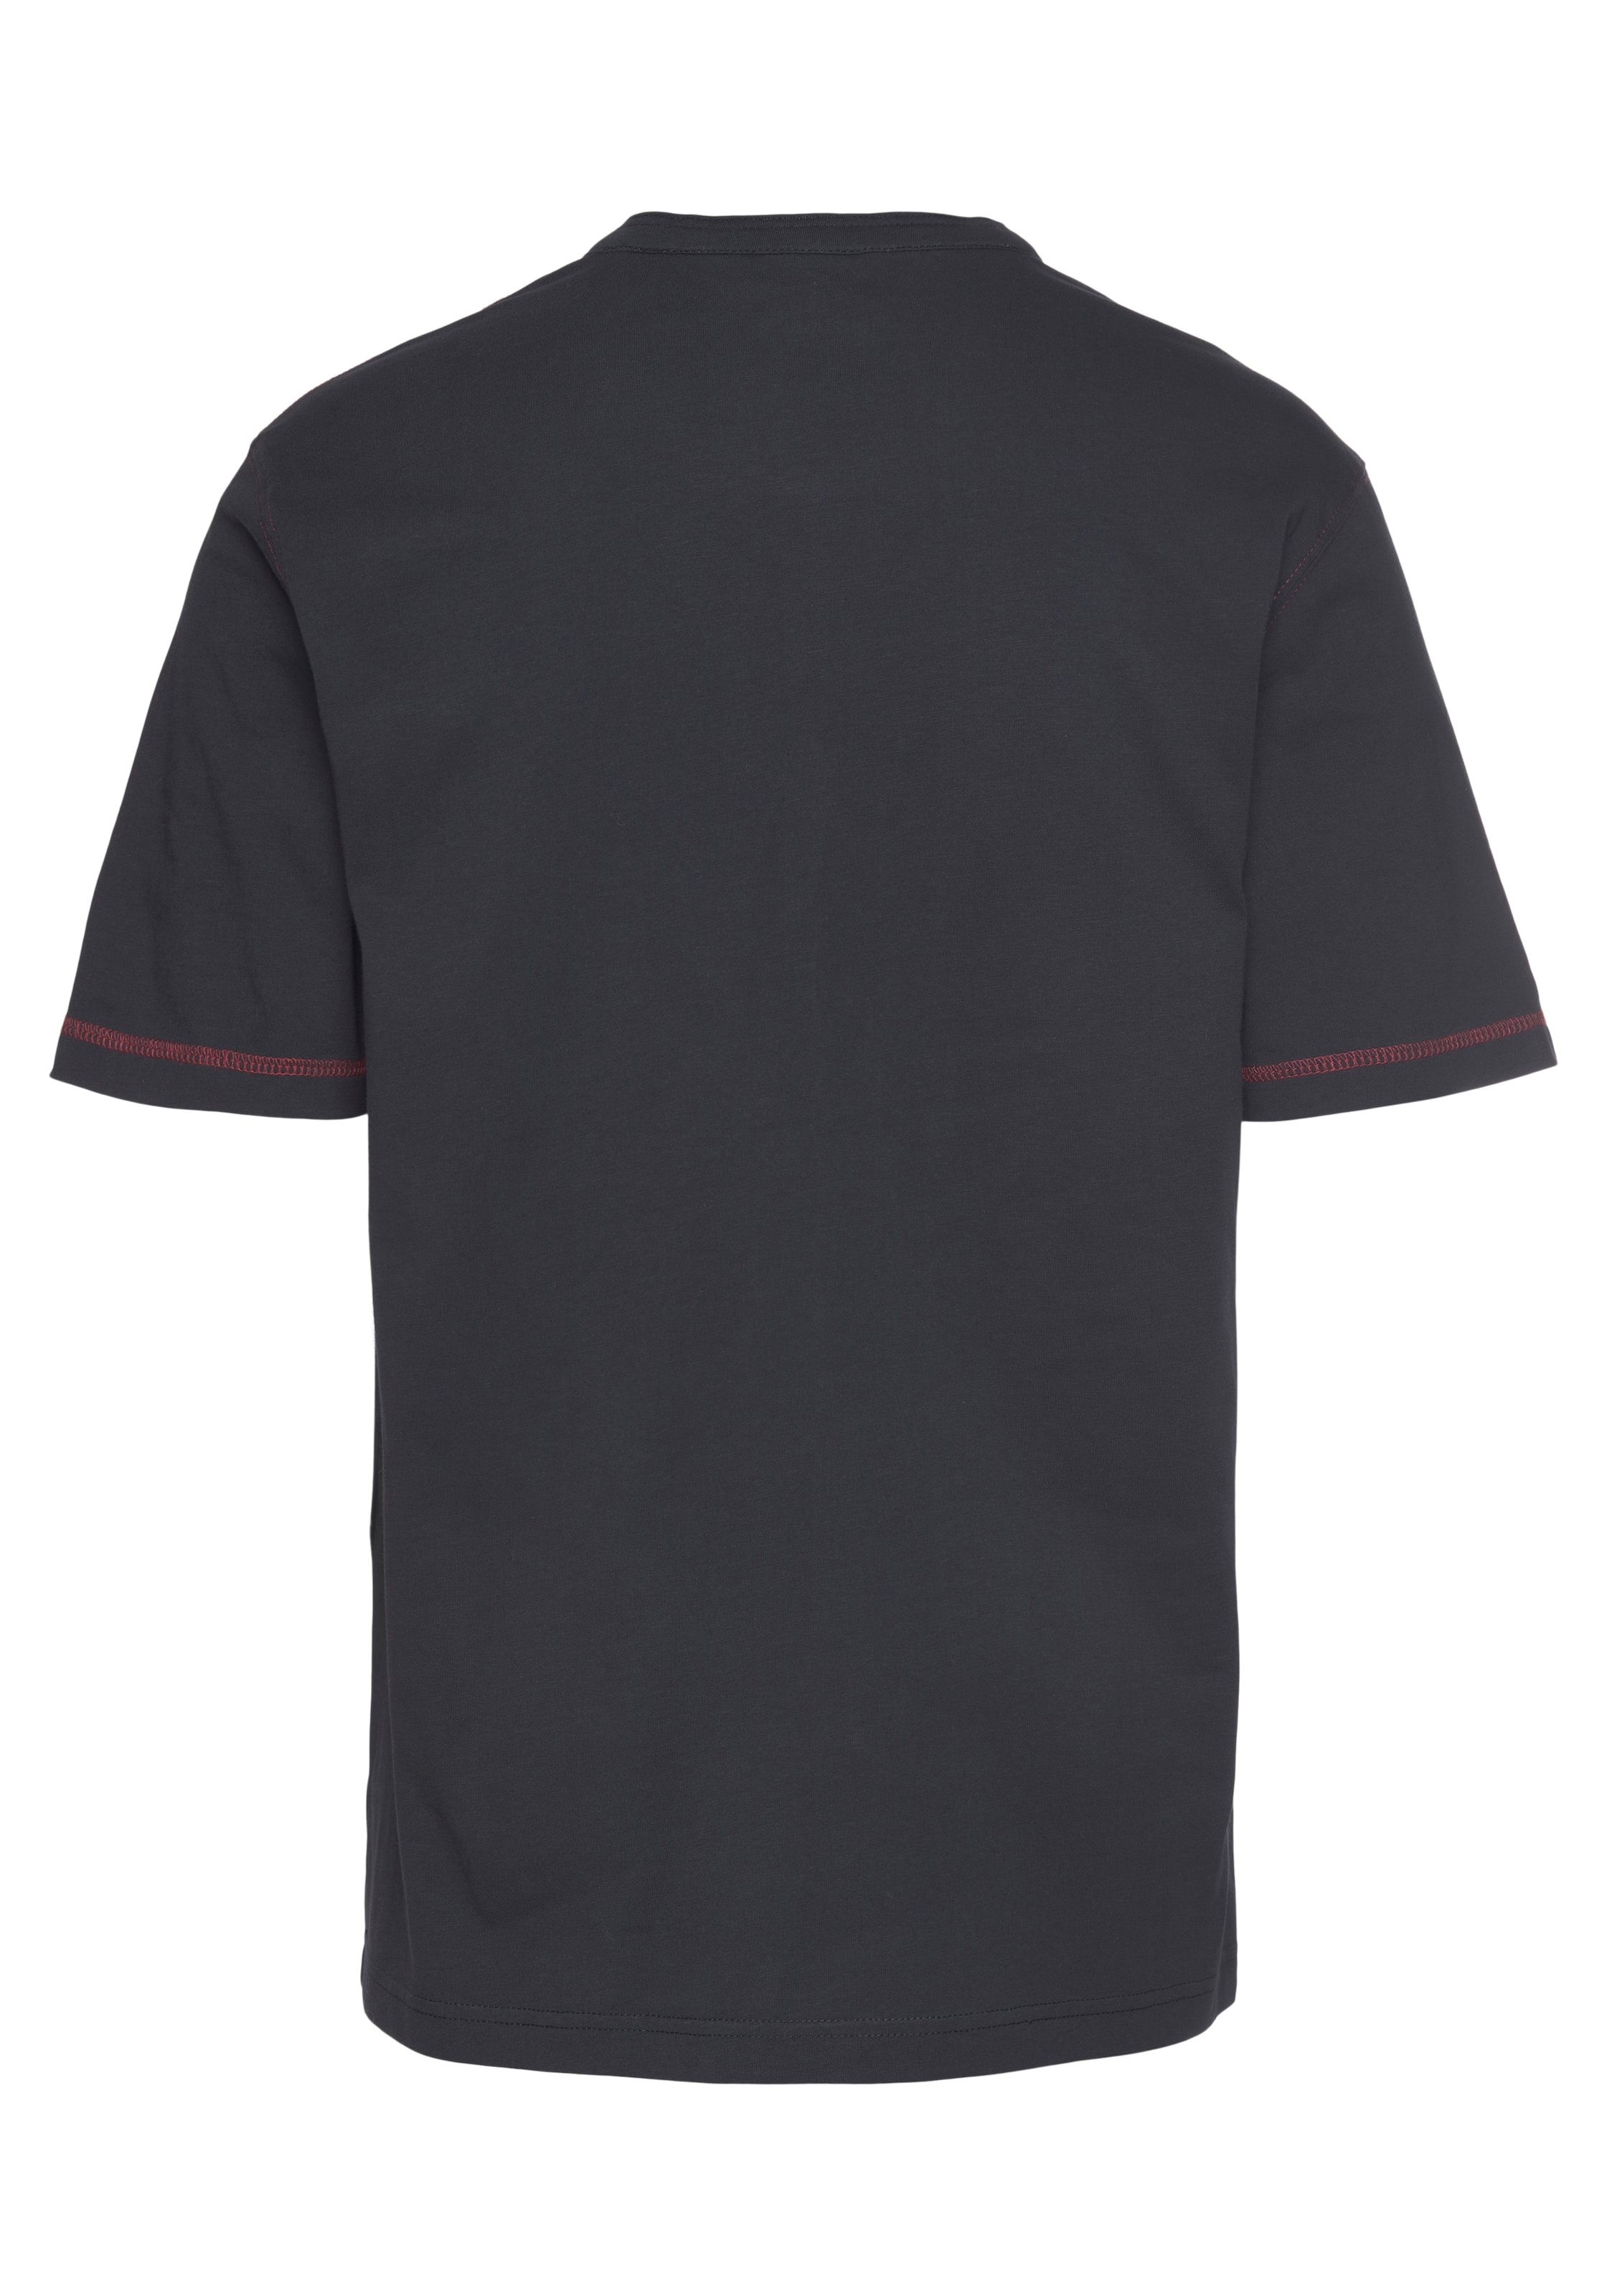 Man's World Henleyshirt, mit kontrastfarbenen Nähten